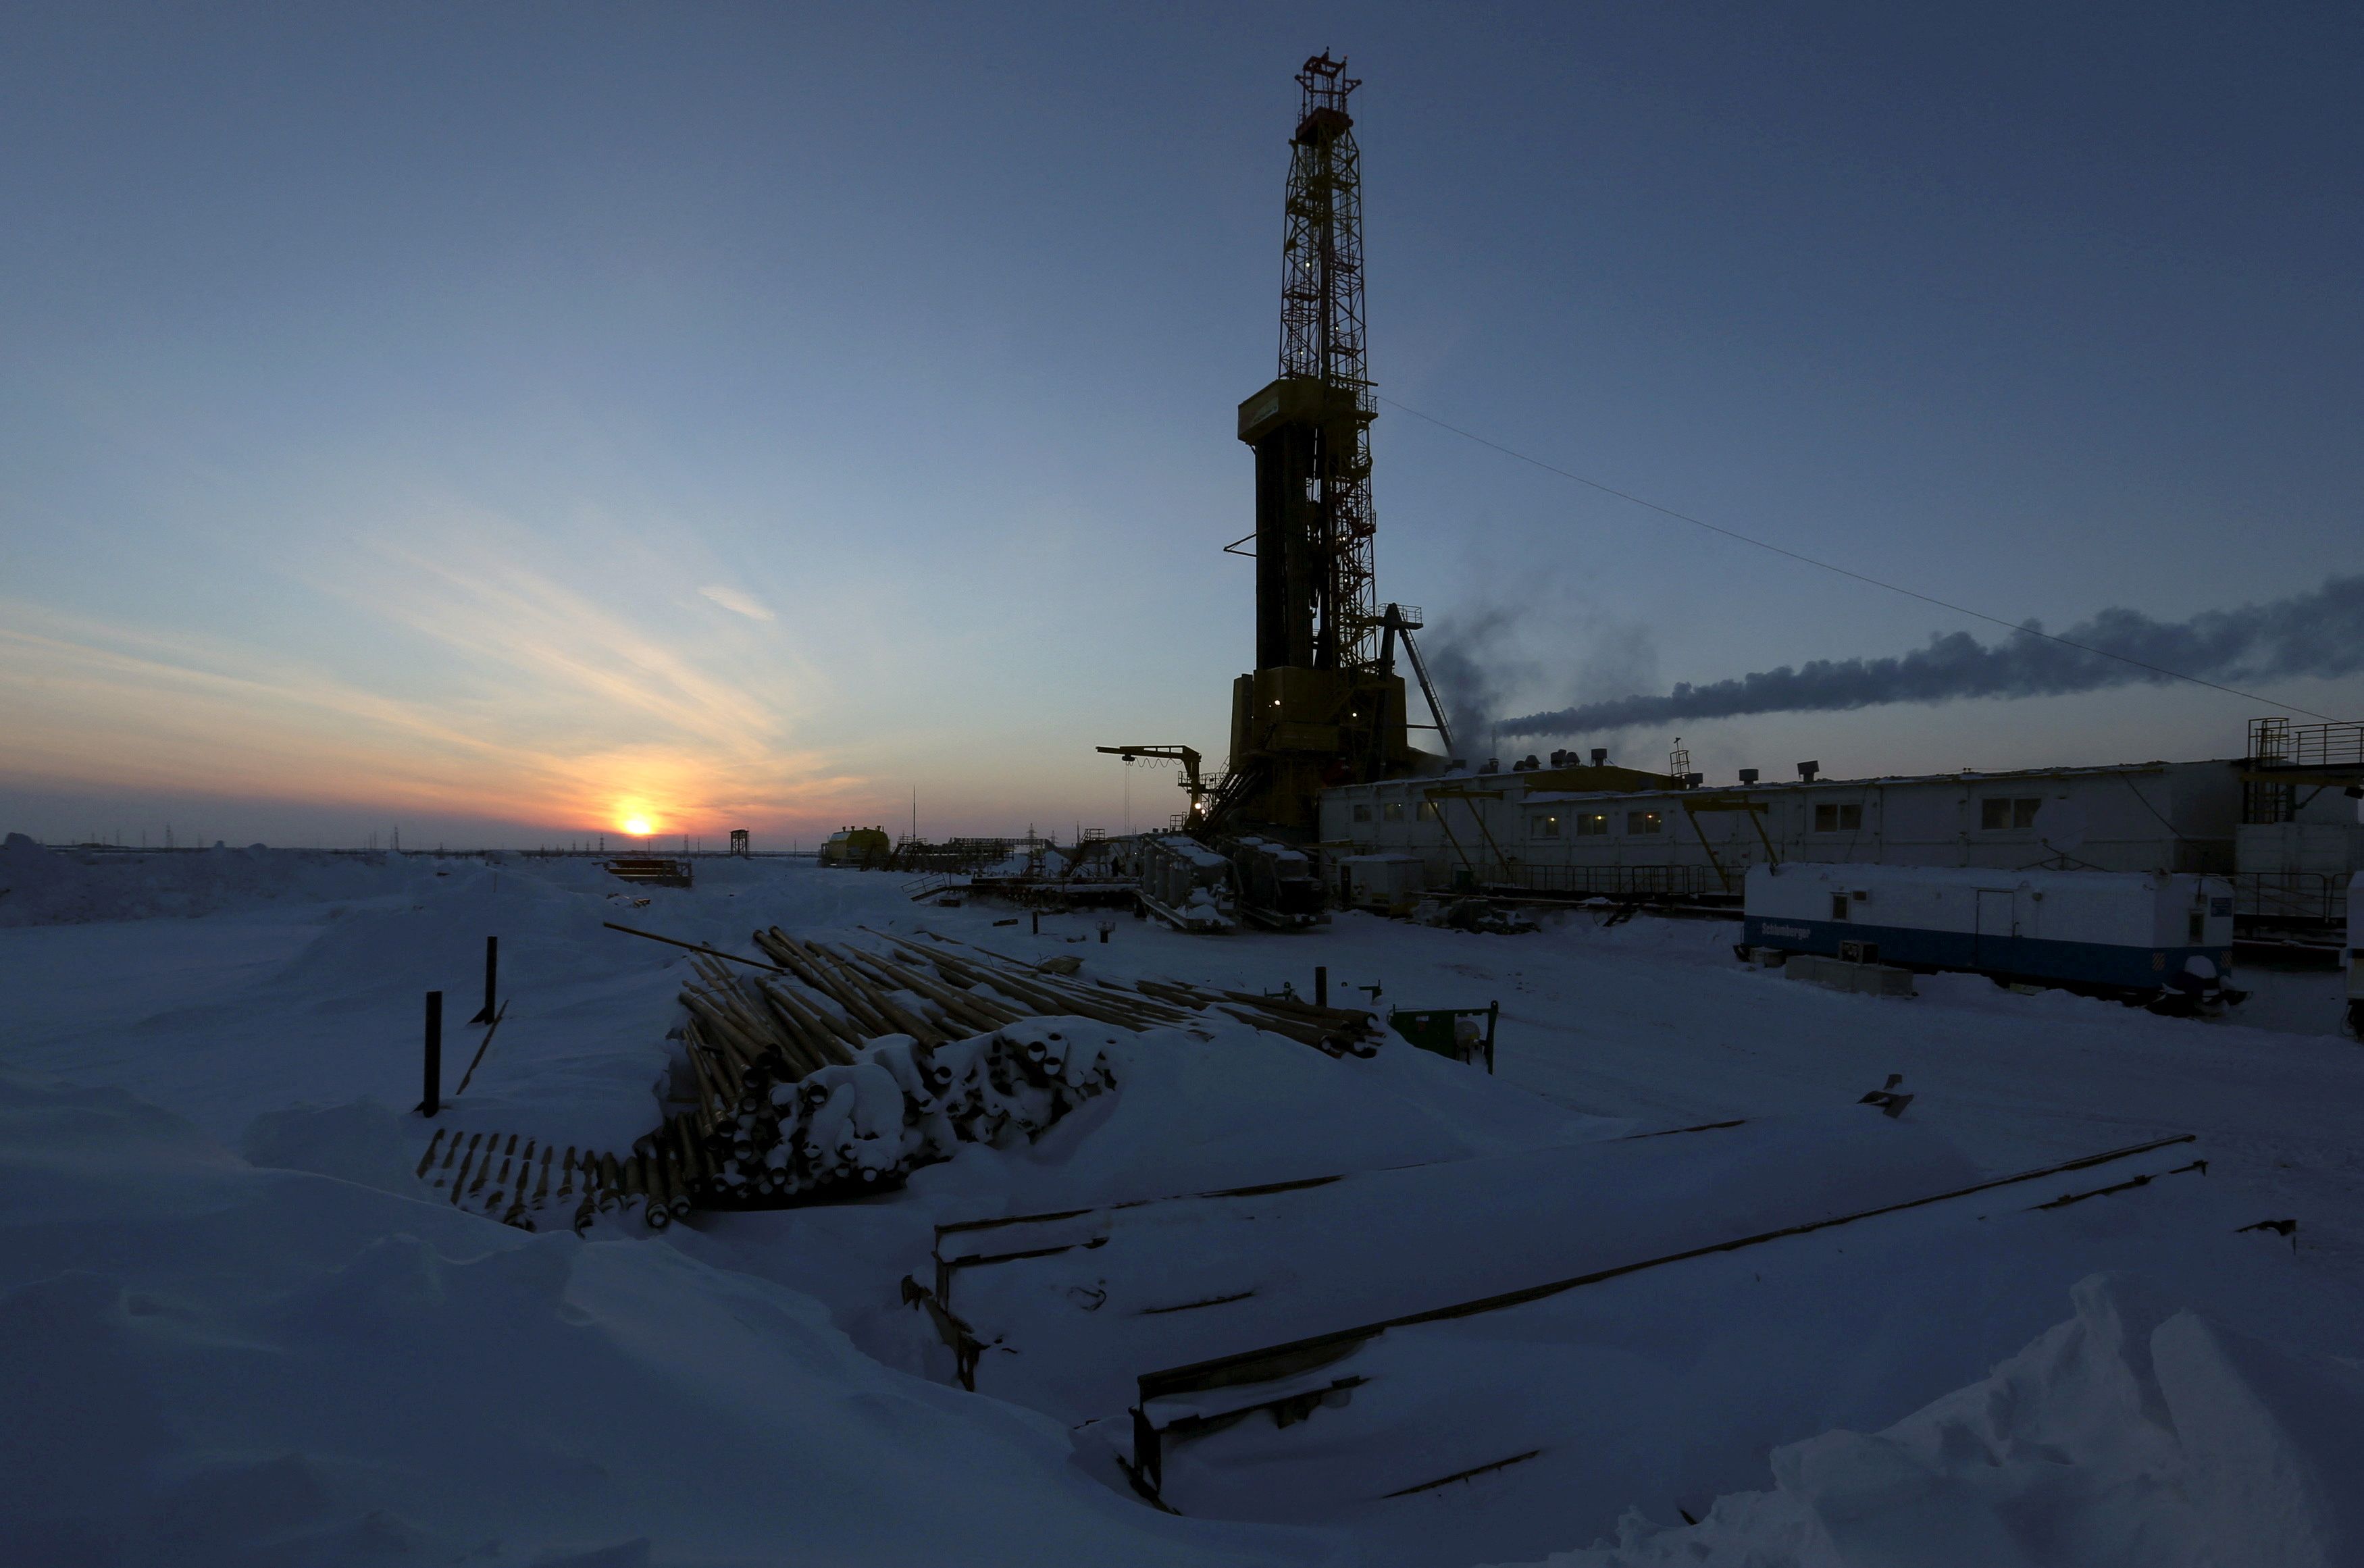 View shows oil derrick at Vankorskoye oil field owned by Rosneft company north of Krasnoyarsk